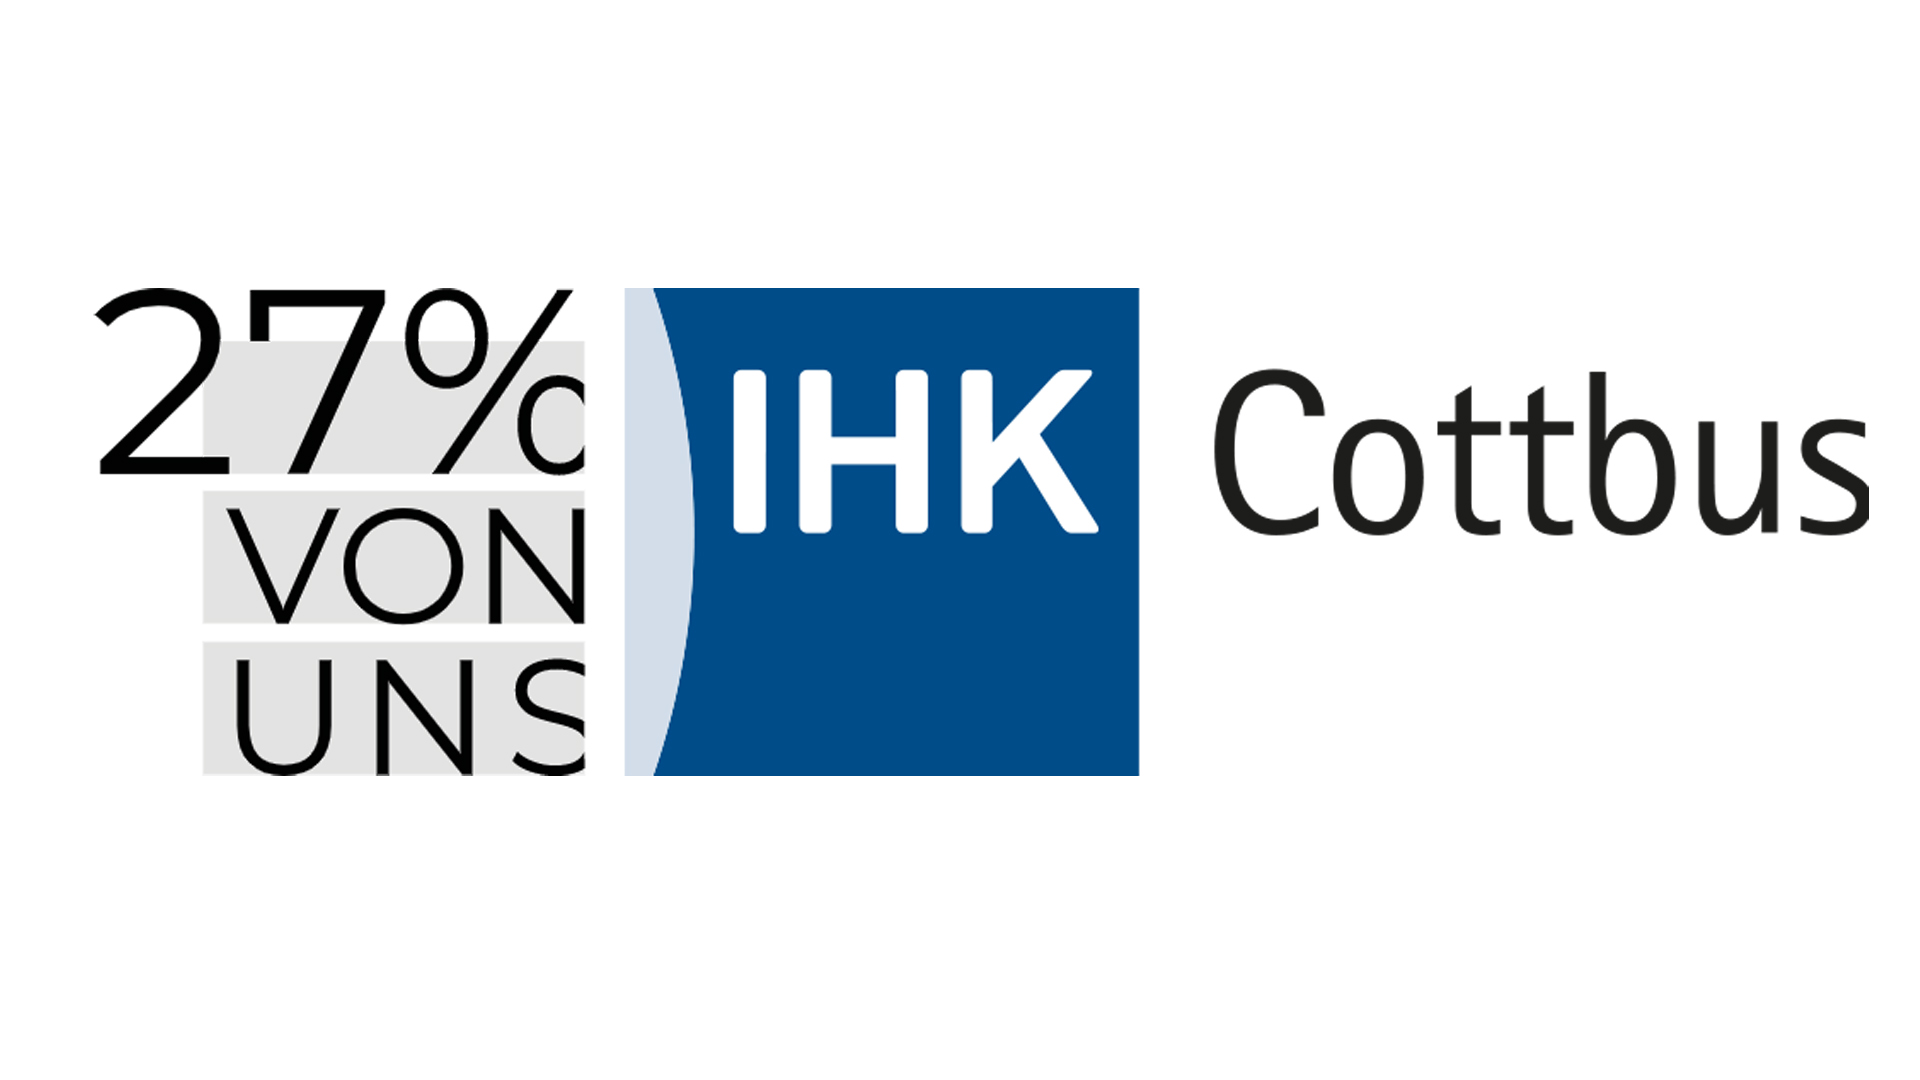 Die Grafik zeigt das Logo der IHK Cottbus. Auf der linken Seite ist es abgeschnitten, dort steht: "27% von uns".